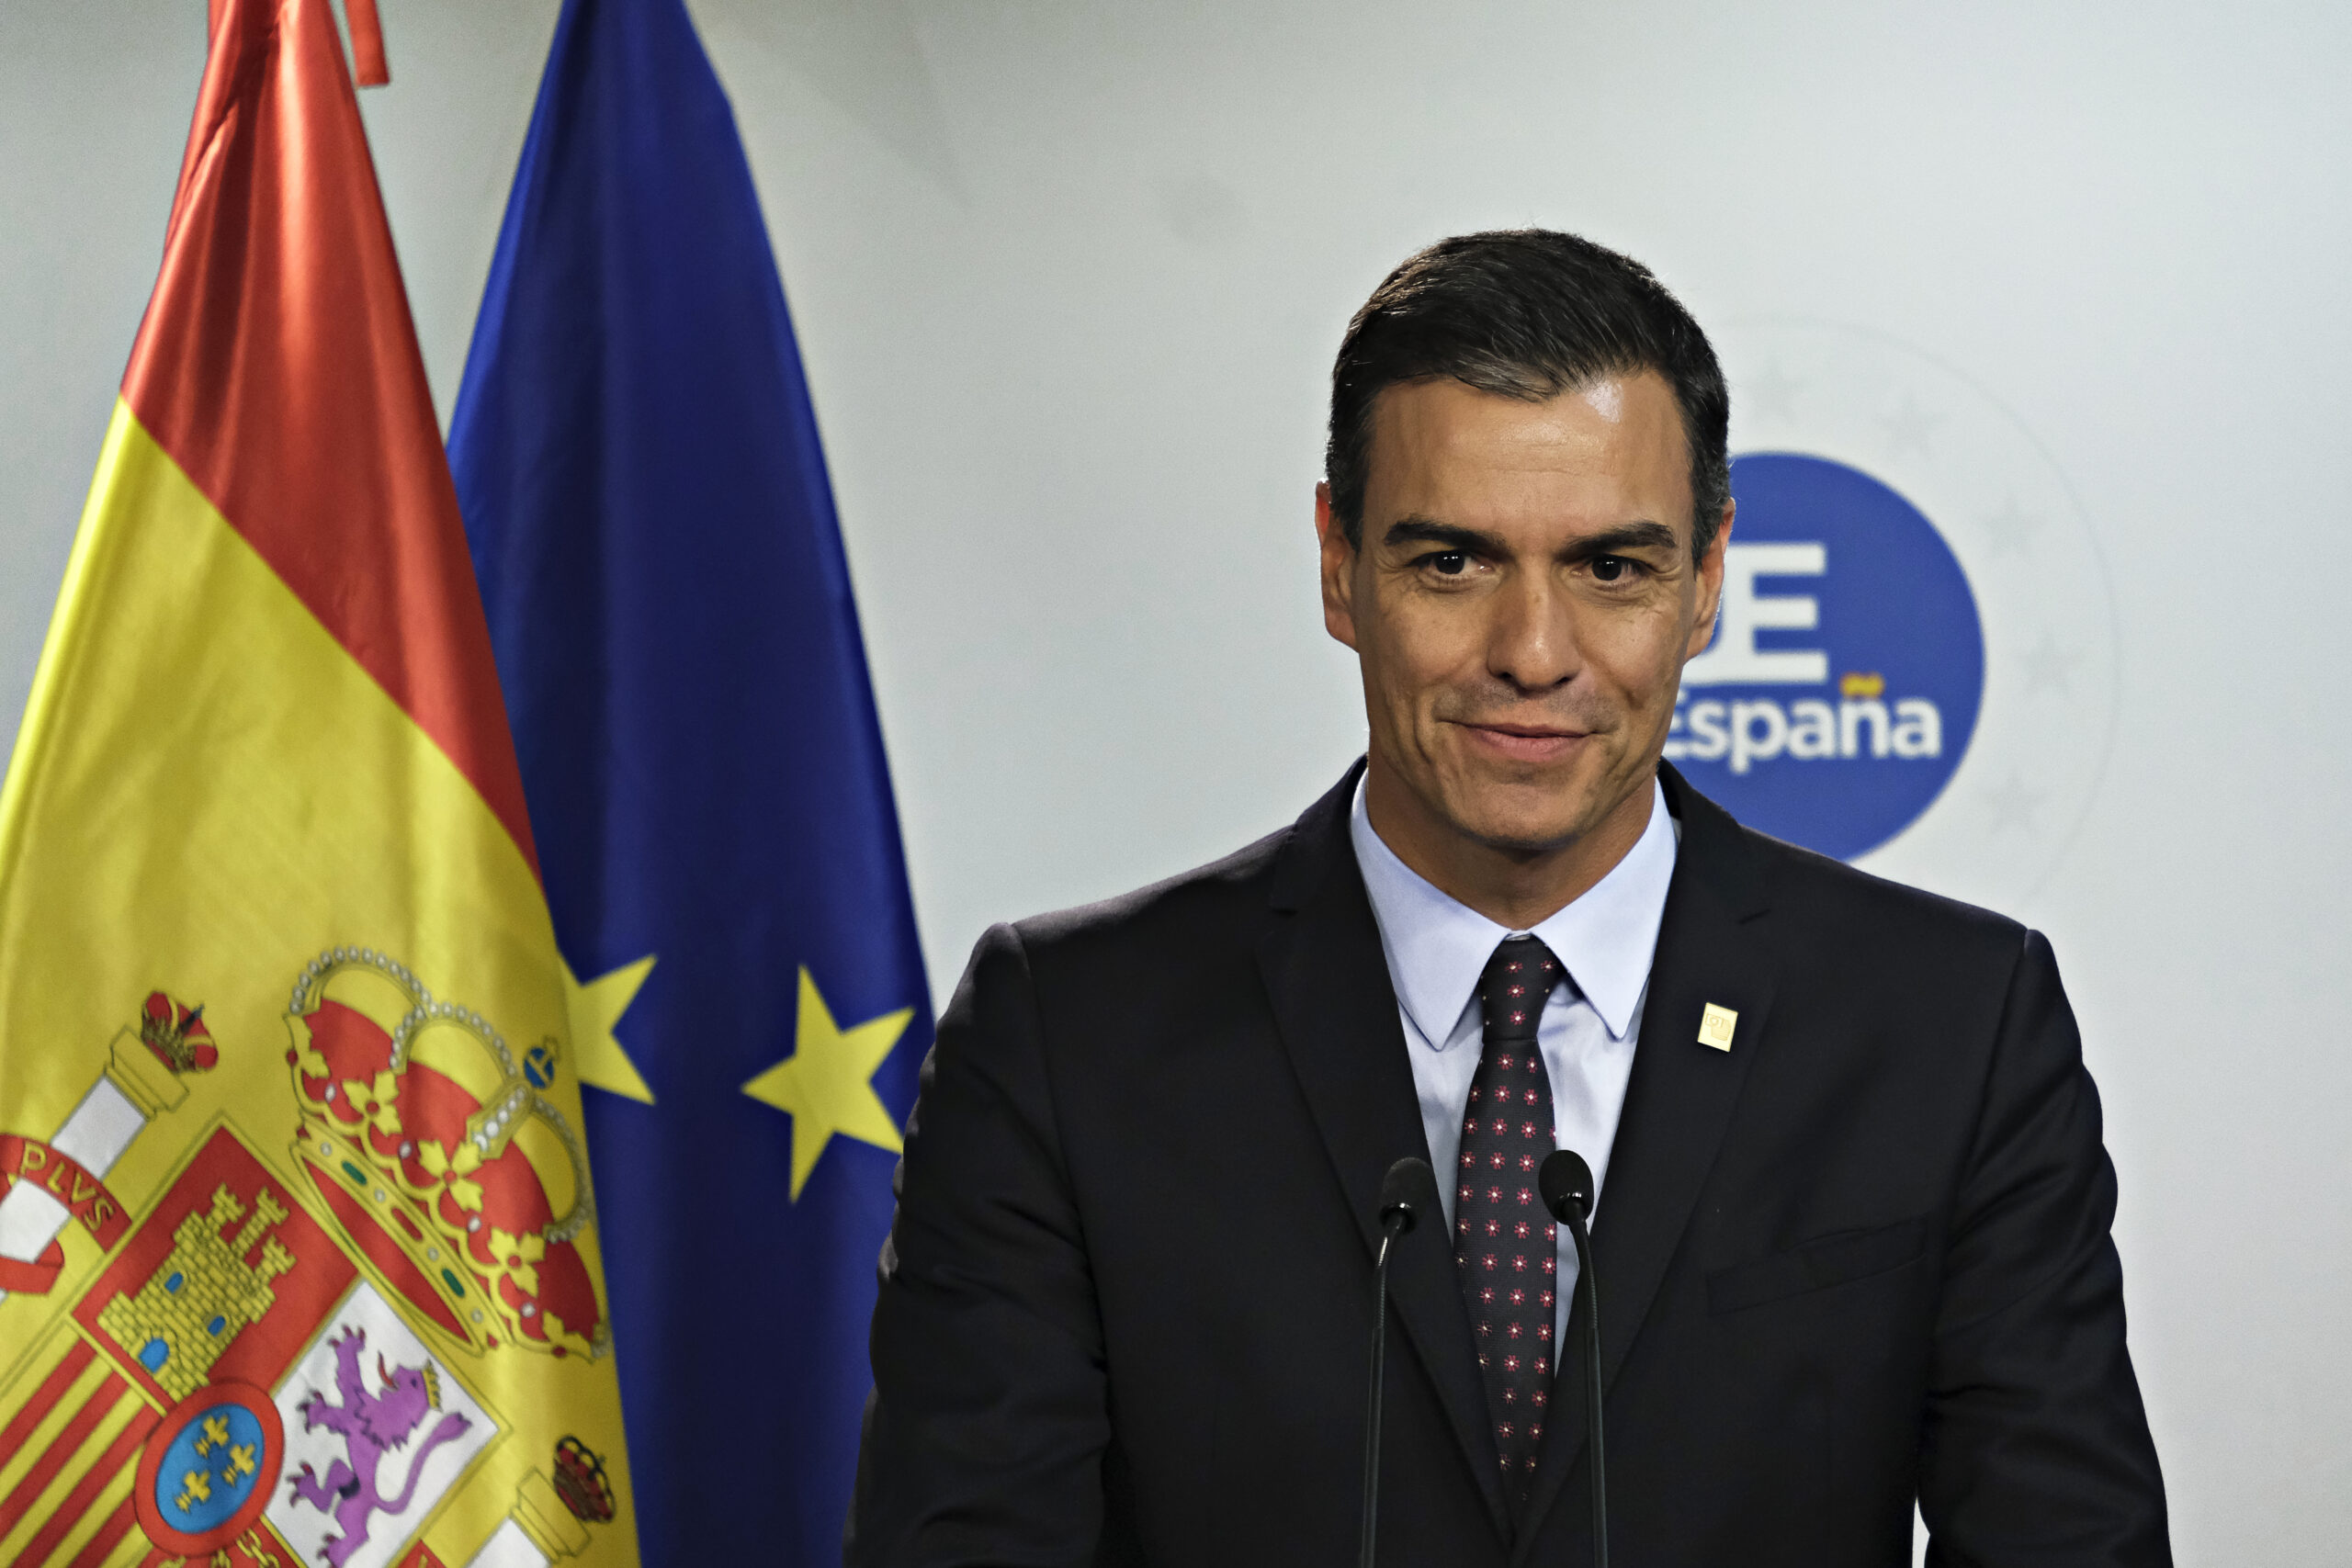 Přečtete si více ze článku Lídři EU: Pedro Sánchez, z pohledného ekonoma španělským premiérem